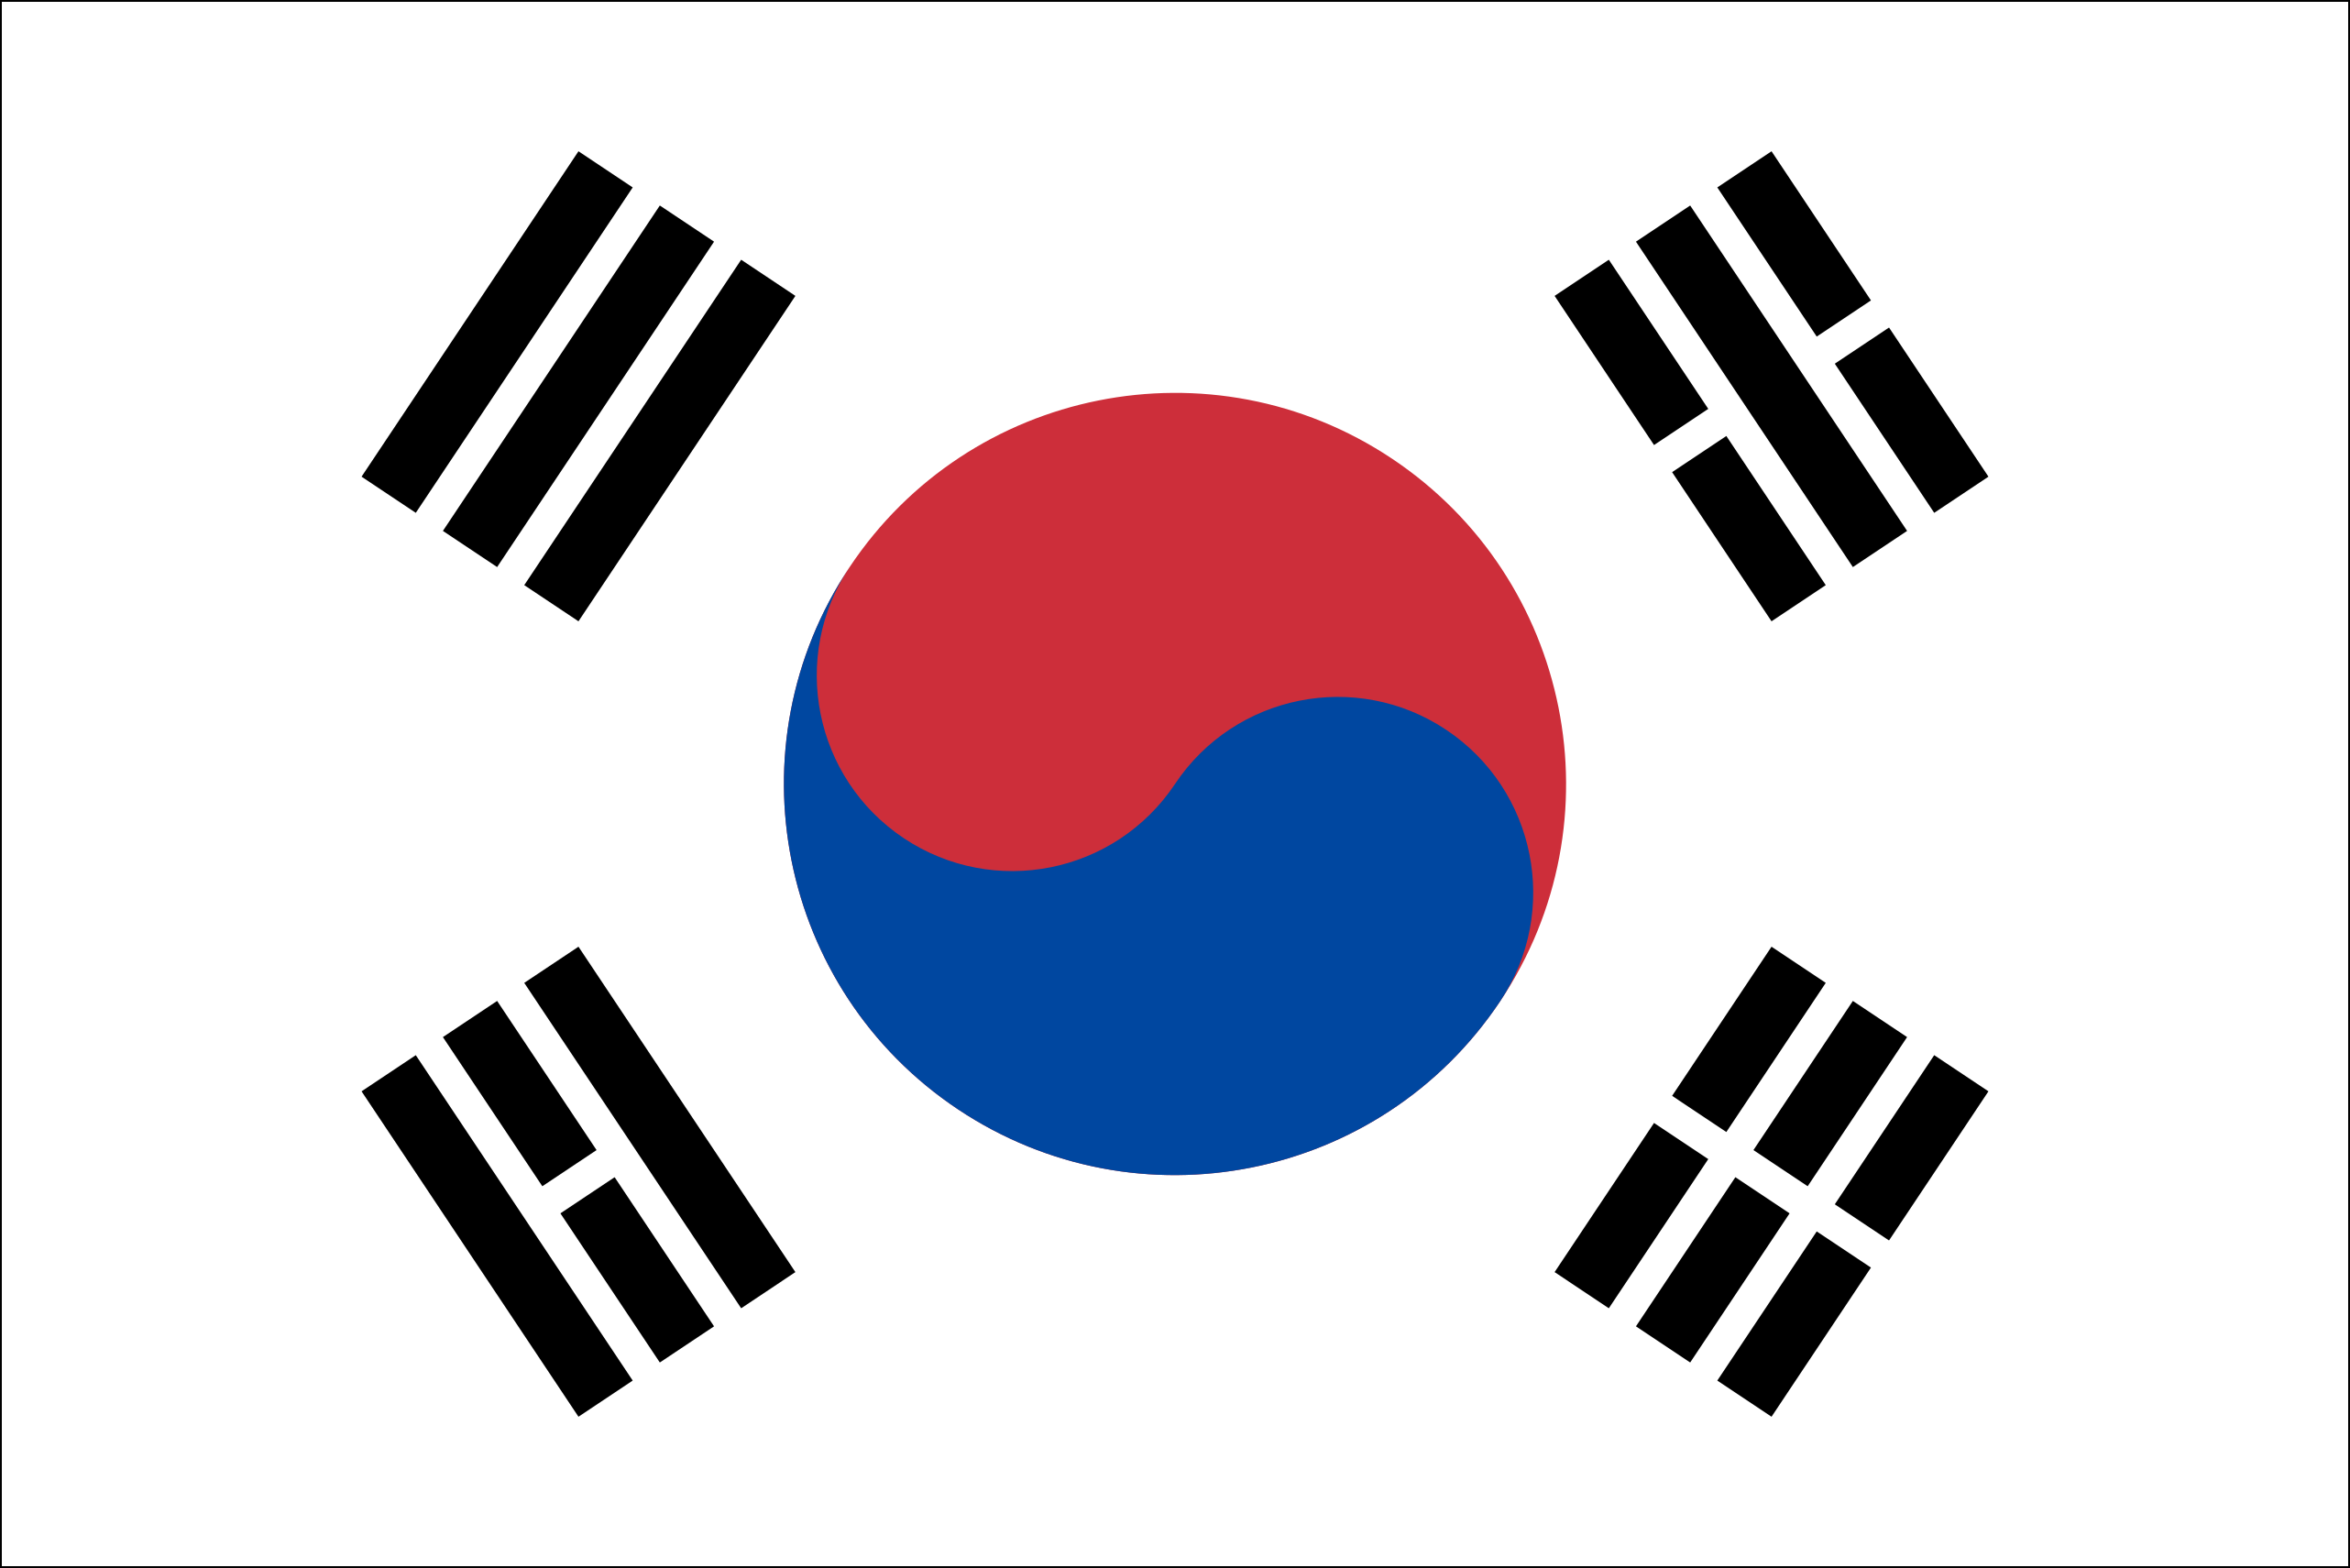 Flagge von Korea